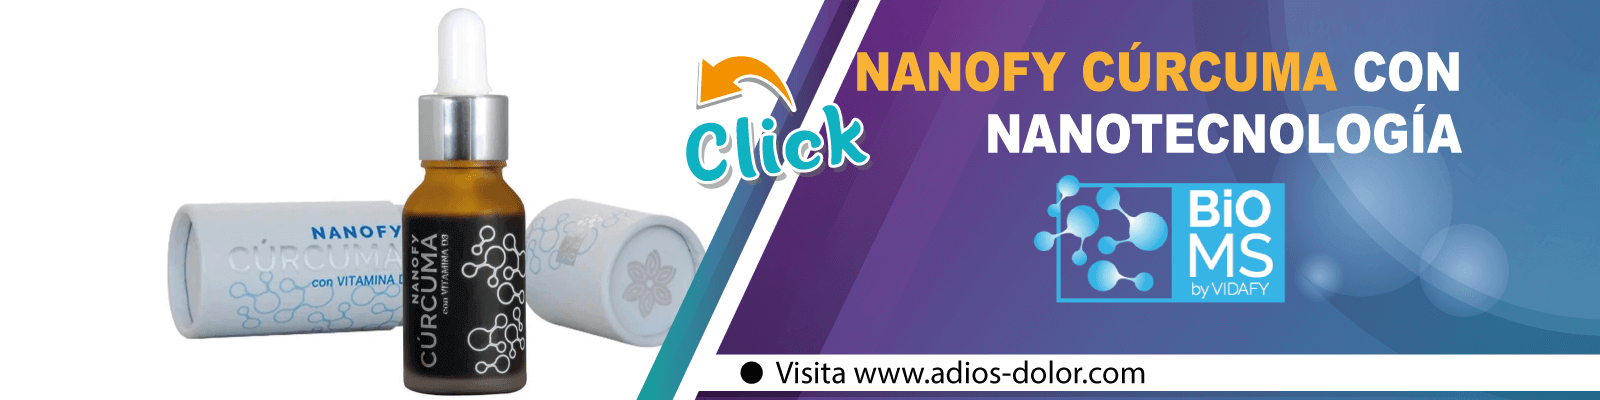 Conocer Nanofy Cúrcuma con tecnología BioMS